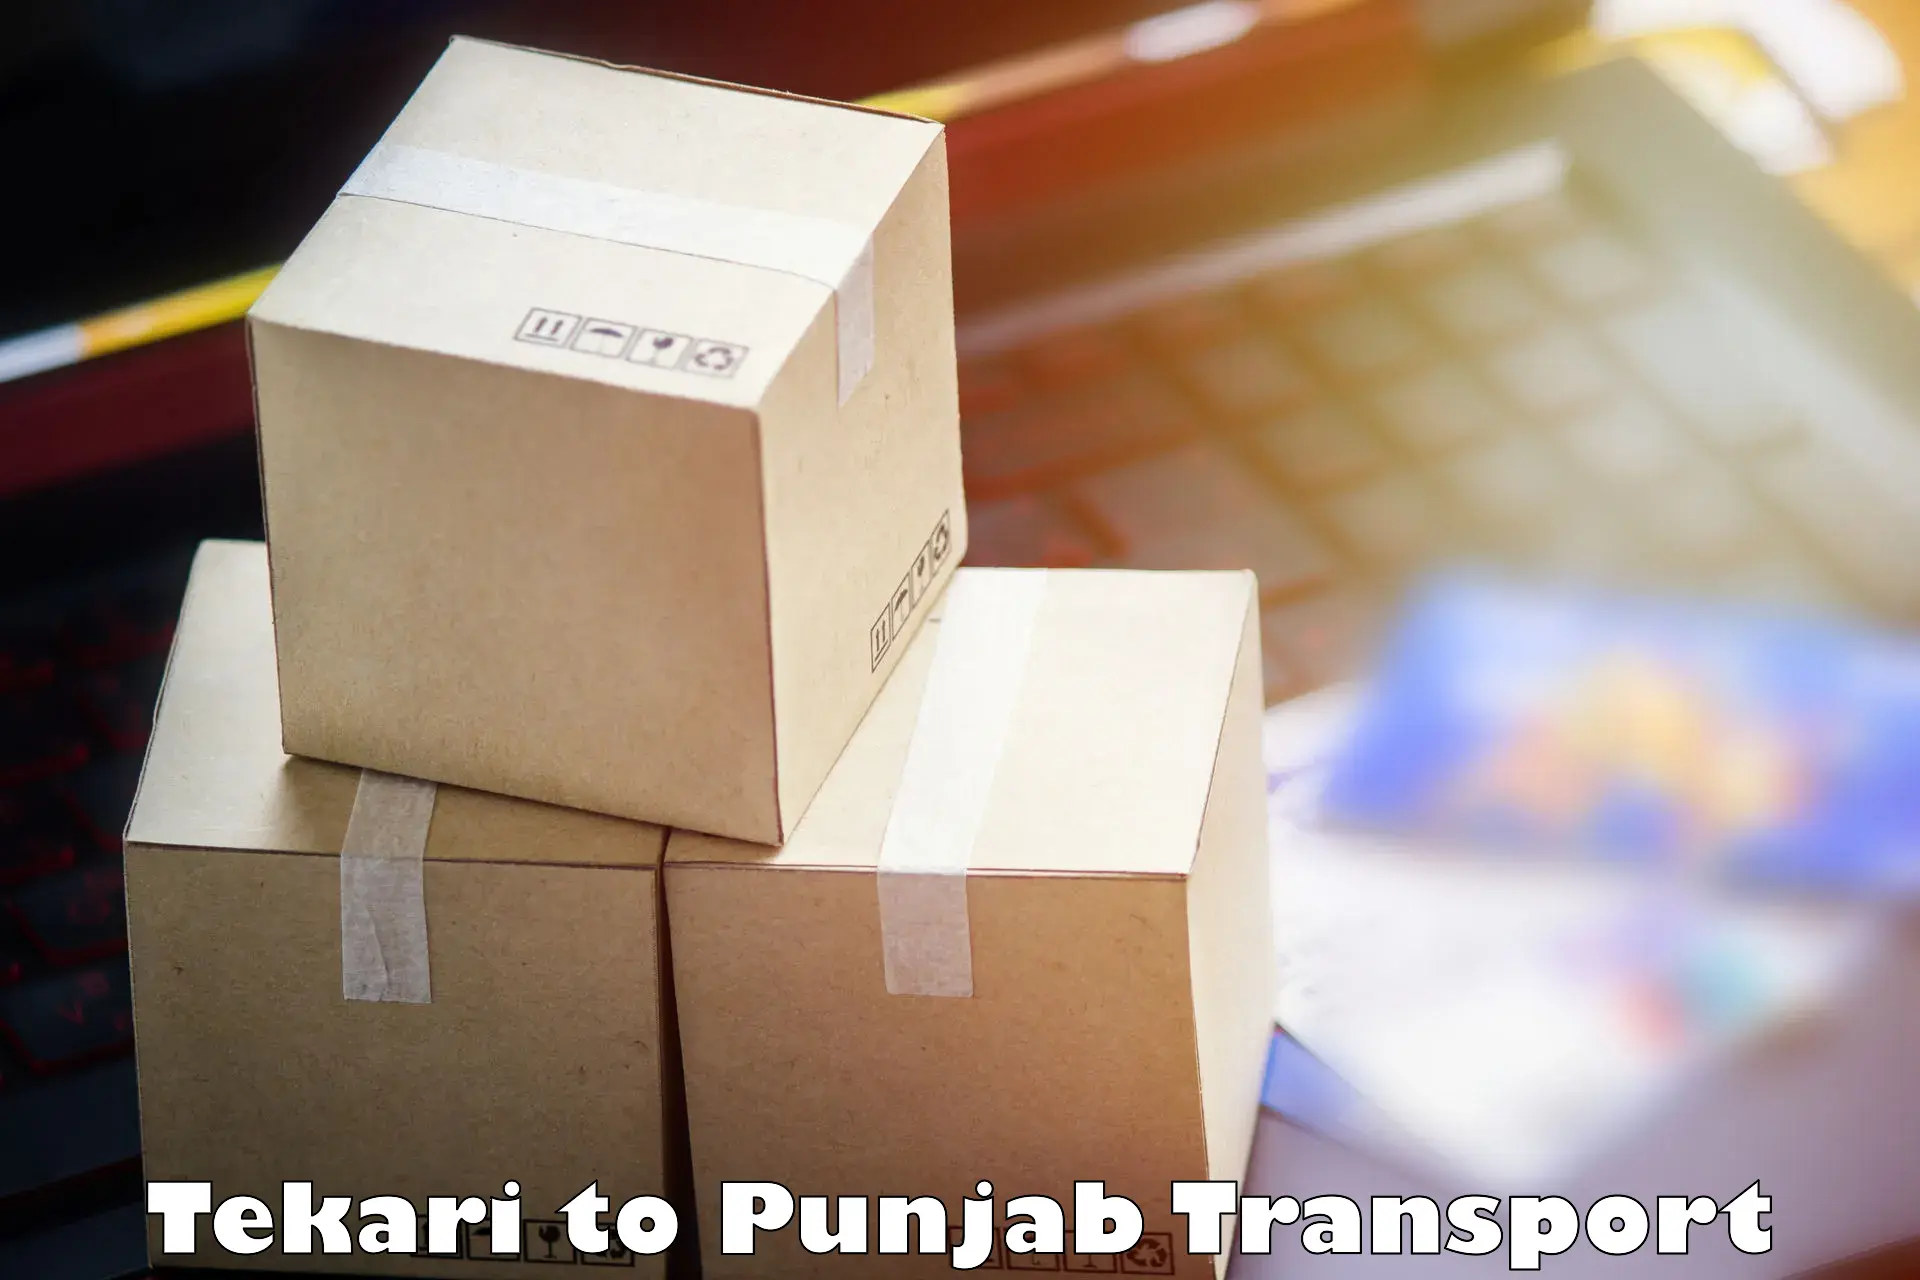 Container transport service Tekari to Sunam